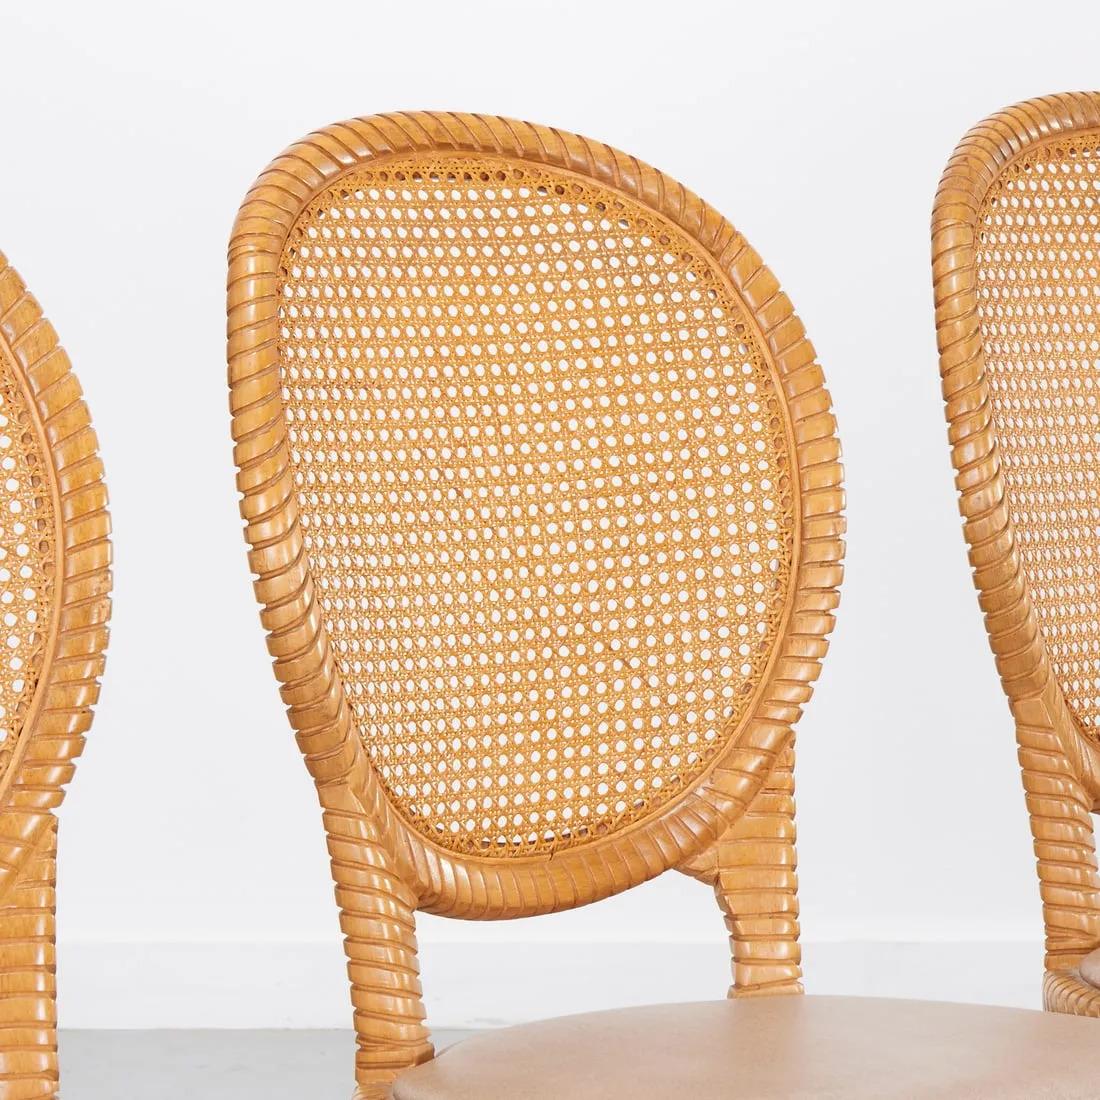 Satz von vier Ballonstühlen mit Rohrrücken.  Die Rahmen der Stühle sind aus geschnitztem Holz und die Sitze mit Vinyl bezogen.  